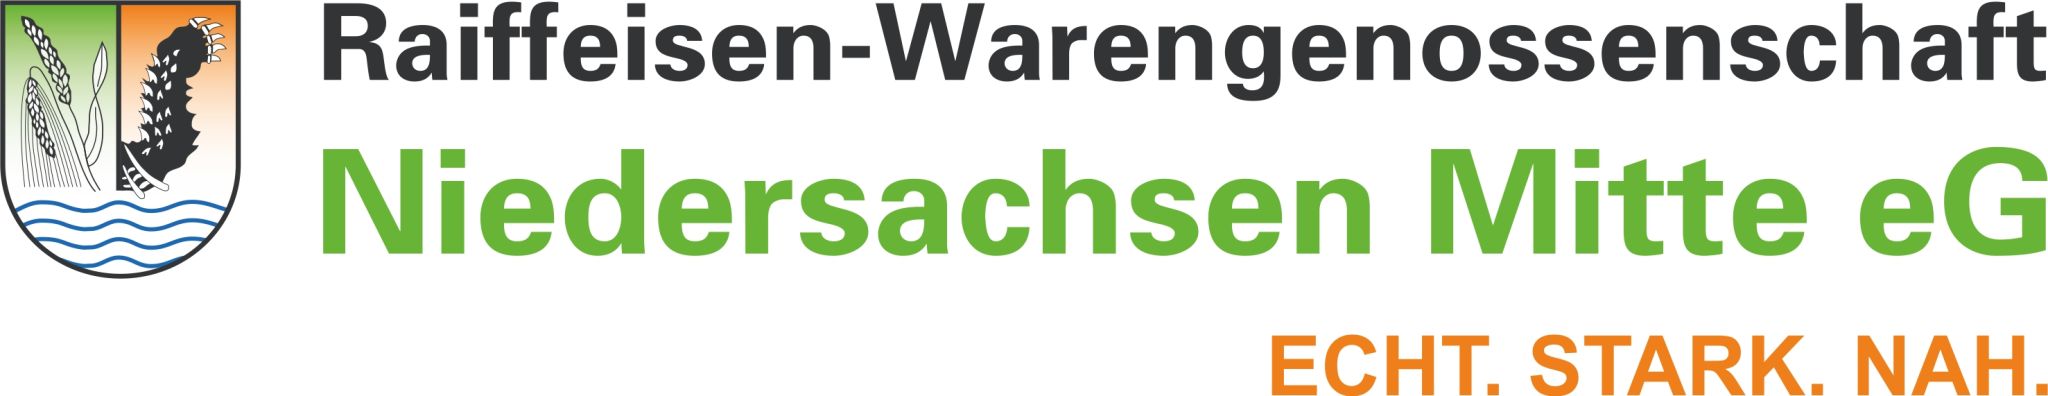 Logo RWG Niedersachsen Mitte EG Echt Stark Nah